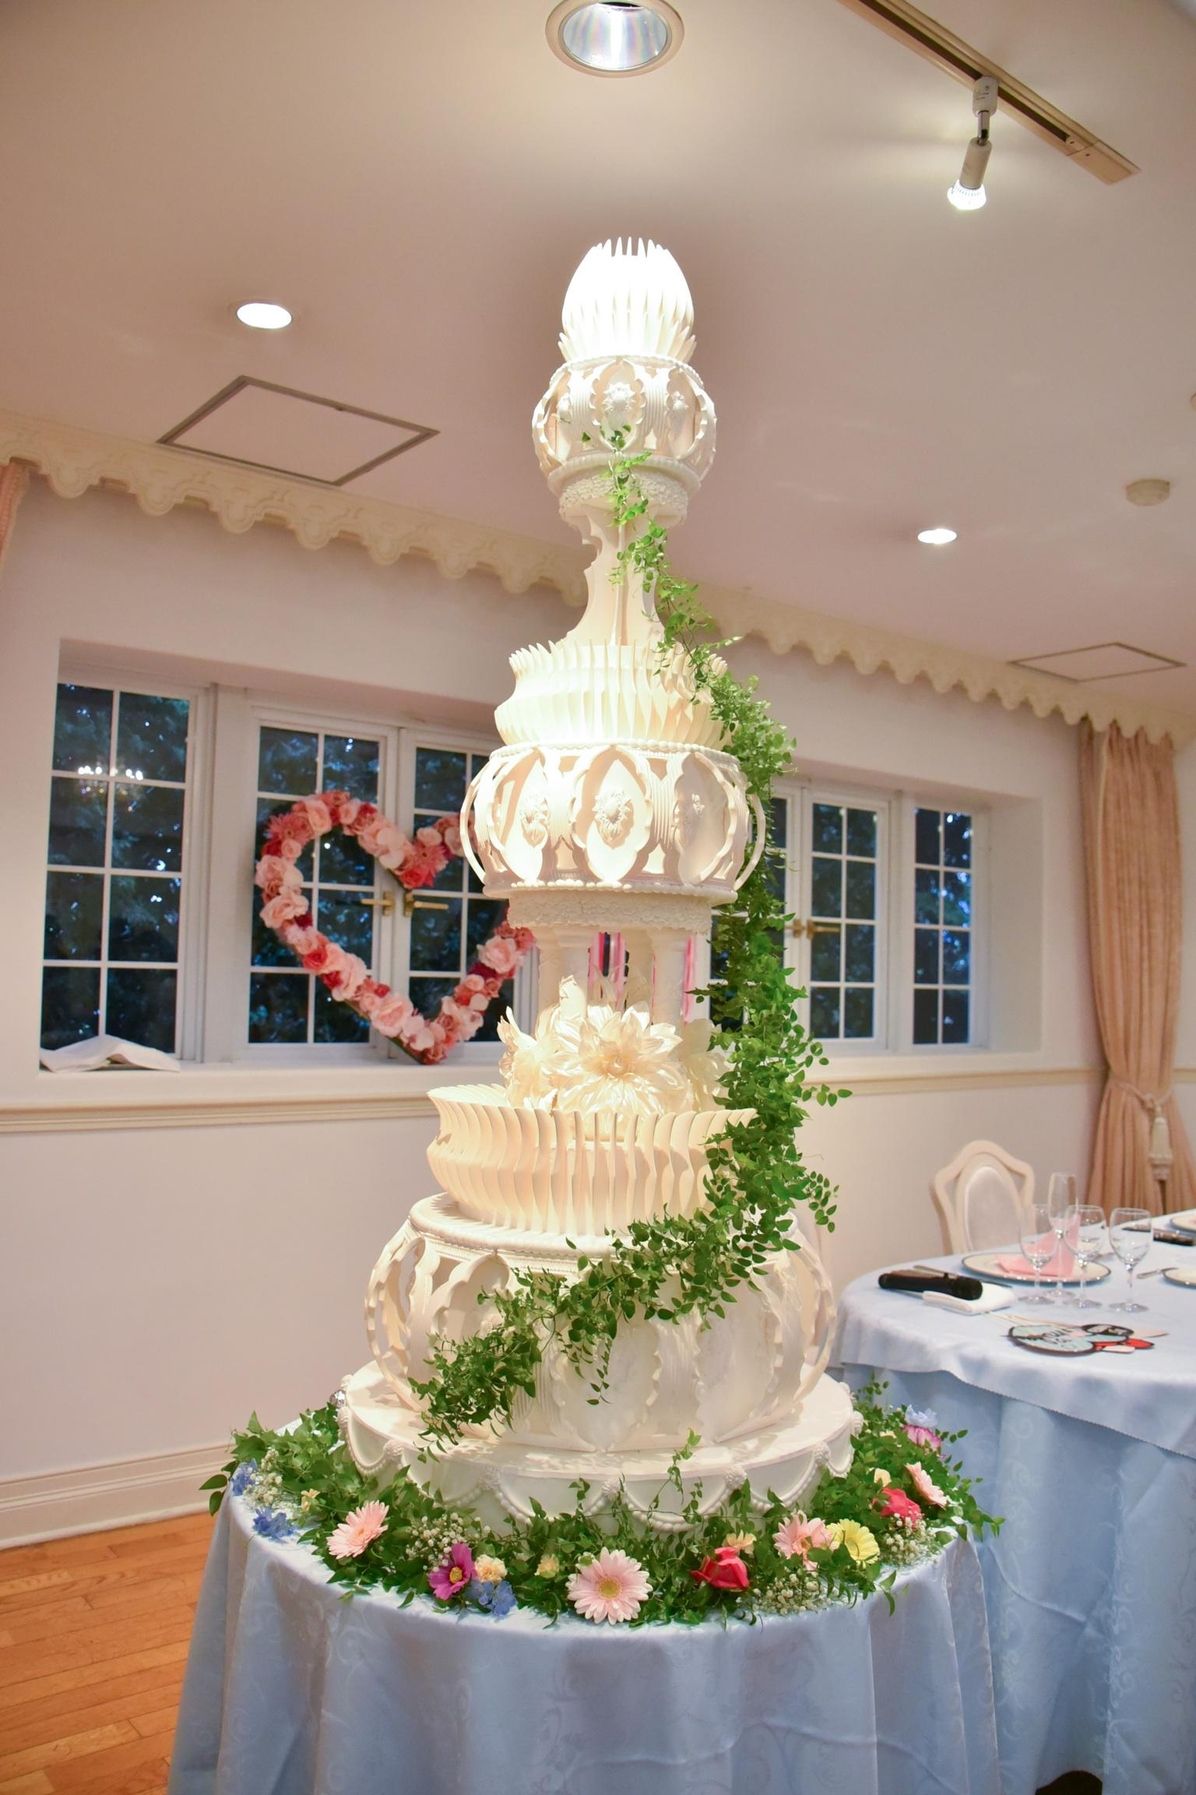 豪華さにときめく 高さのあるウェディングケーキデザイン11選 結婚式準備はウェディングニュース